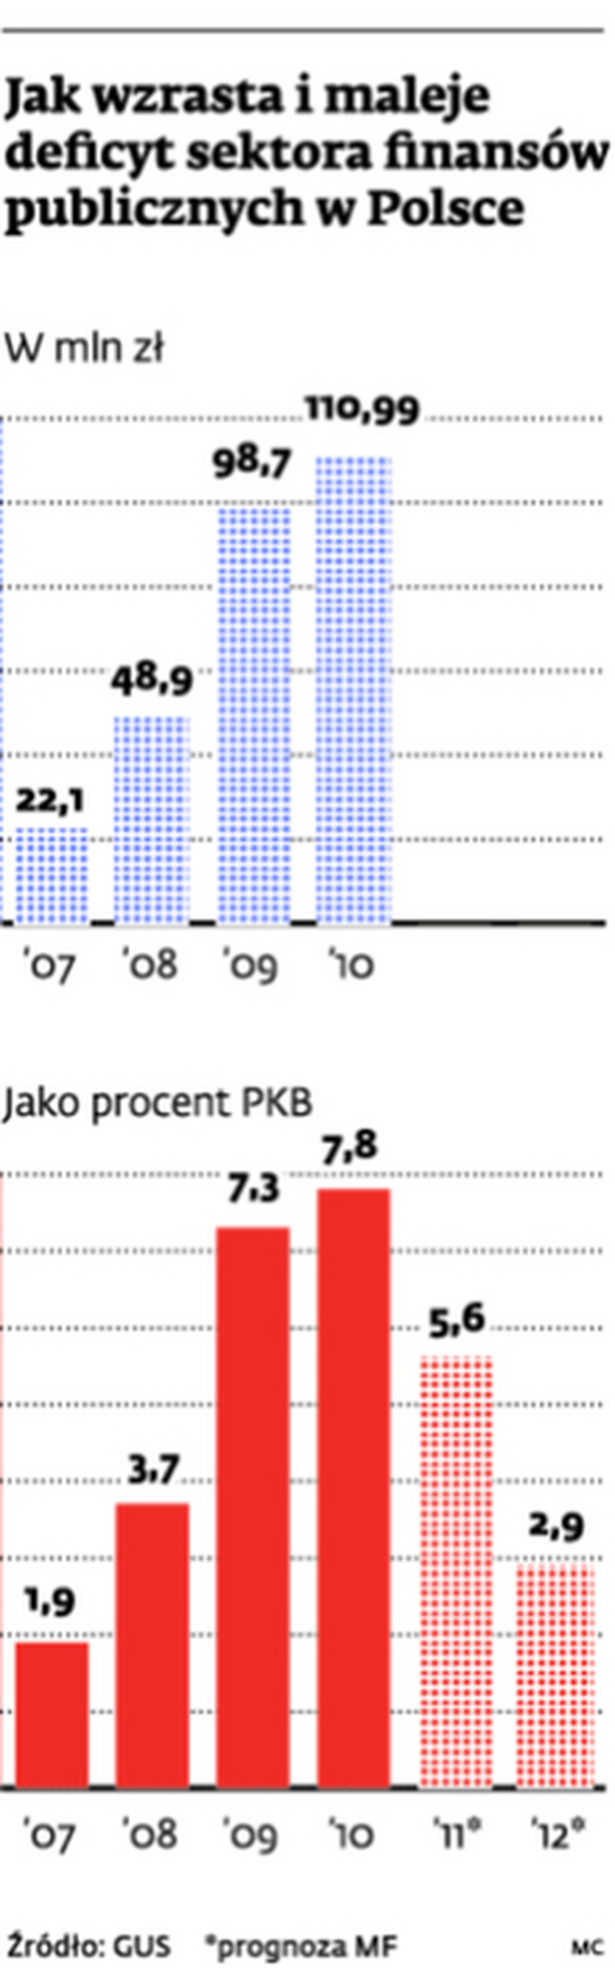 Jak wzrasta i maleje deficyt sektora finansów publicznych w Polsce